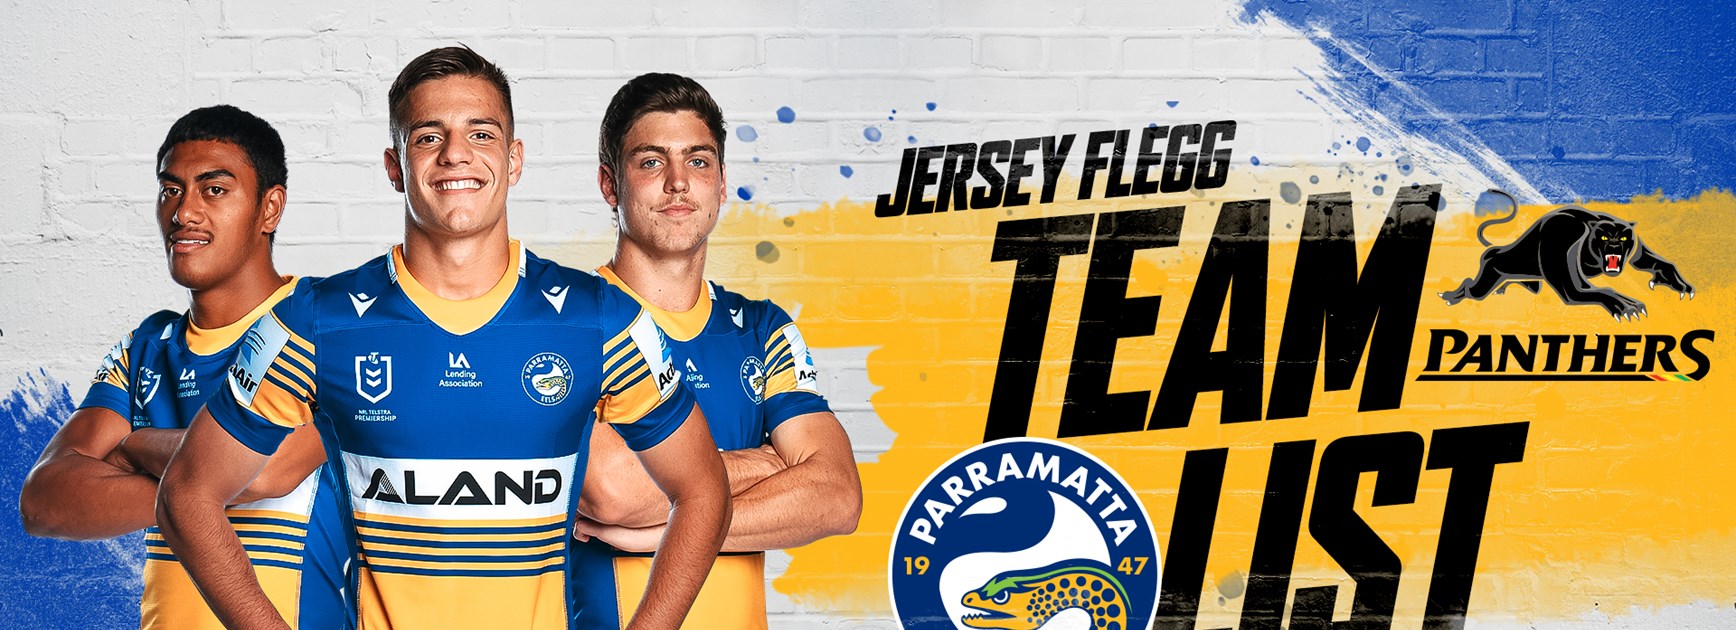 Jersey Flegg Team List: Panthers v Eels, Trial